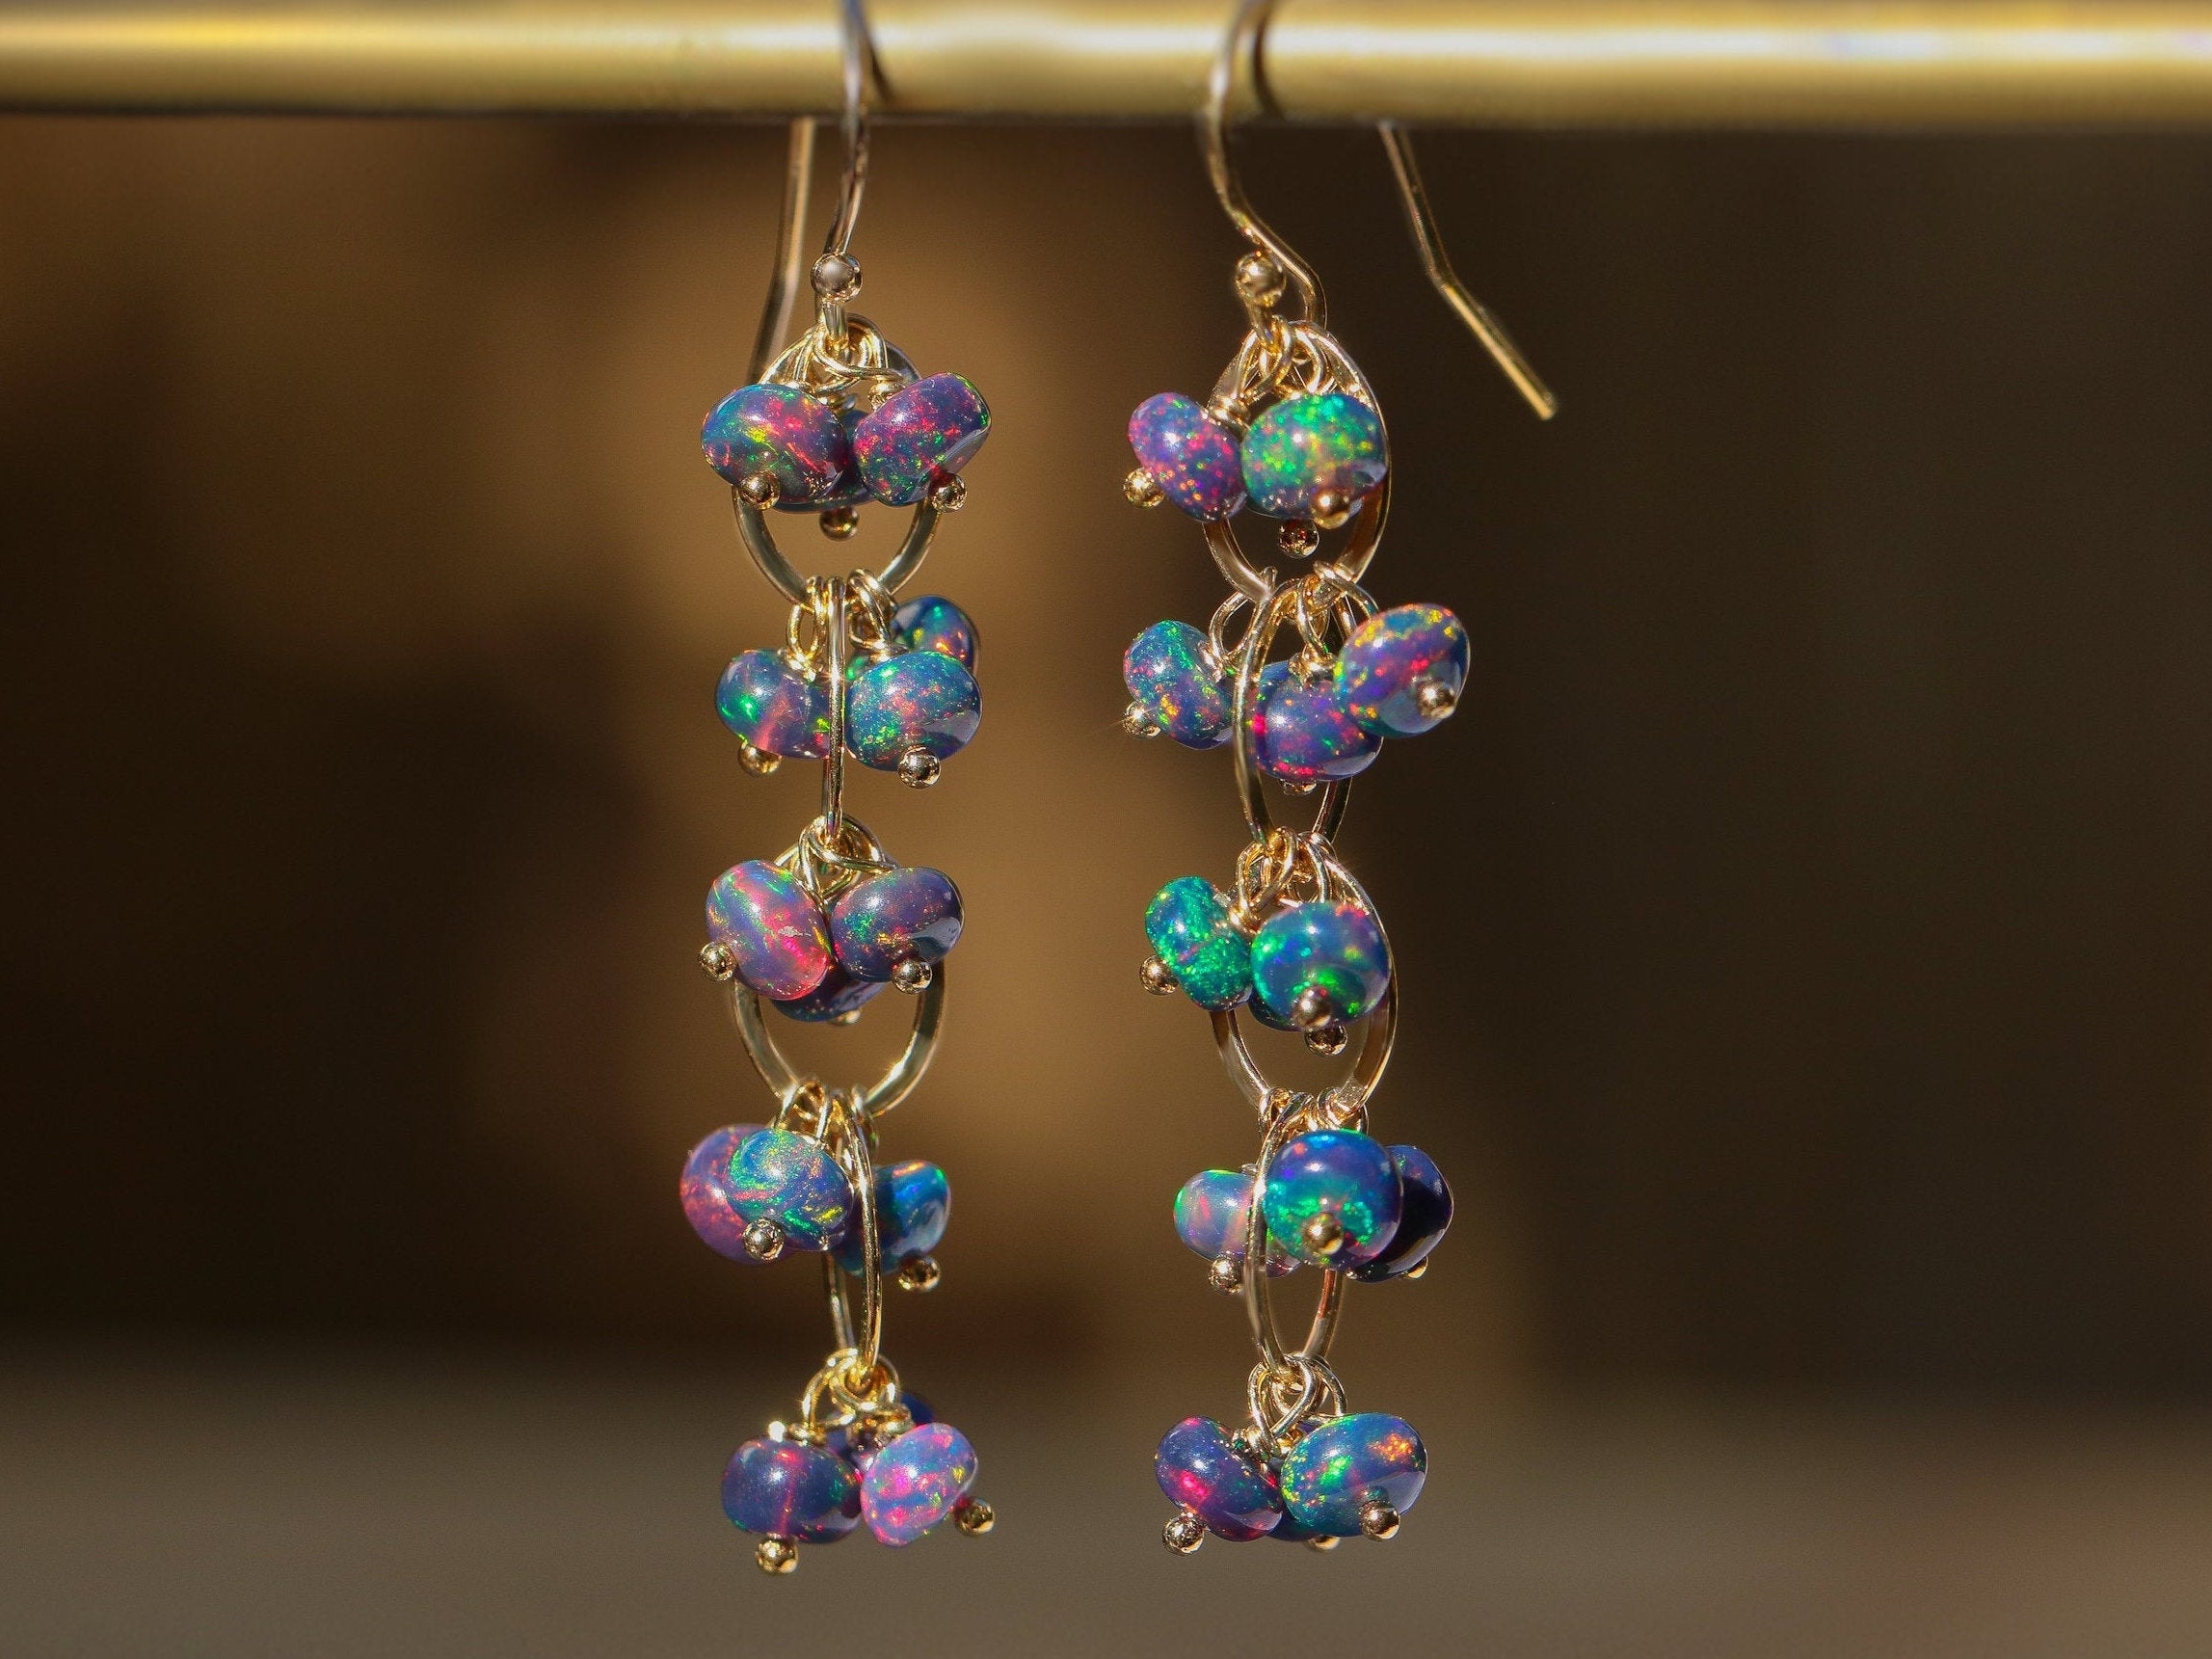 Black Opal Earrings, Black Ethiopian Opal Dangle Earrings in Gold